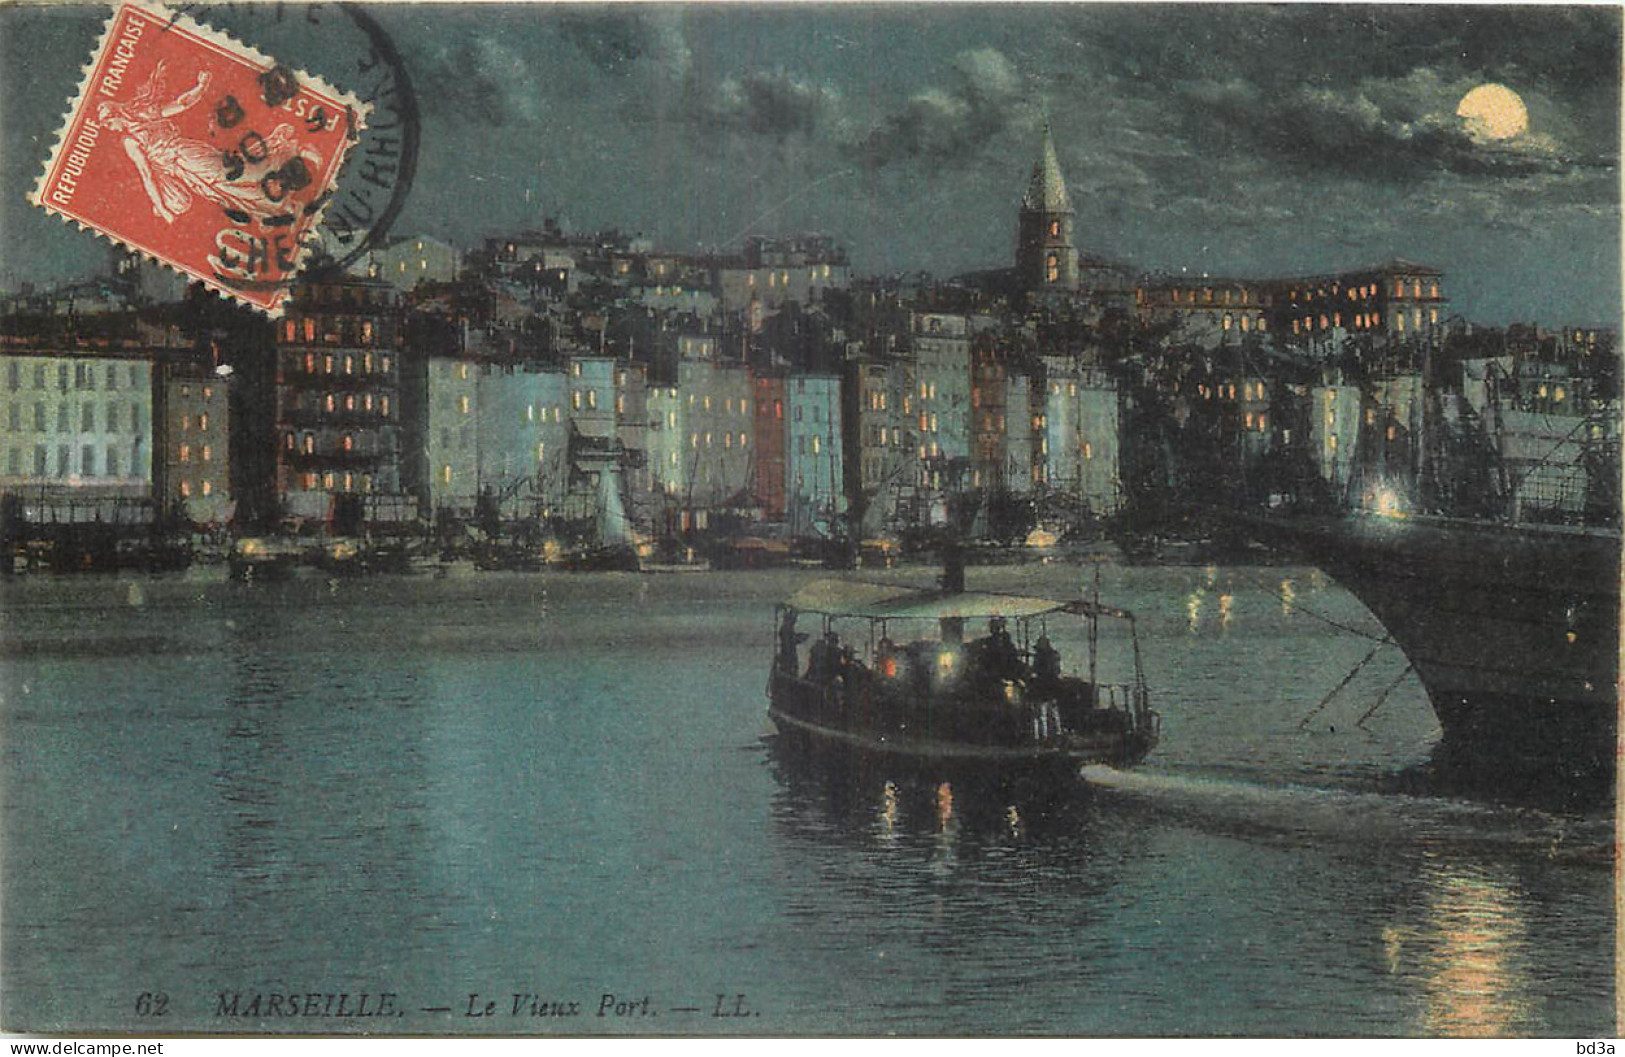 13 - MARSEILLE - LE VIEUX PORT - Alter Hafen (Vieux Port), Saint-Victor, Le Panier